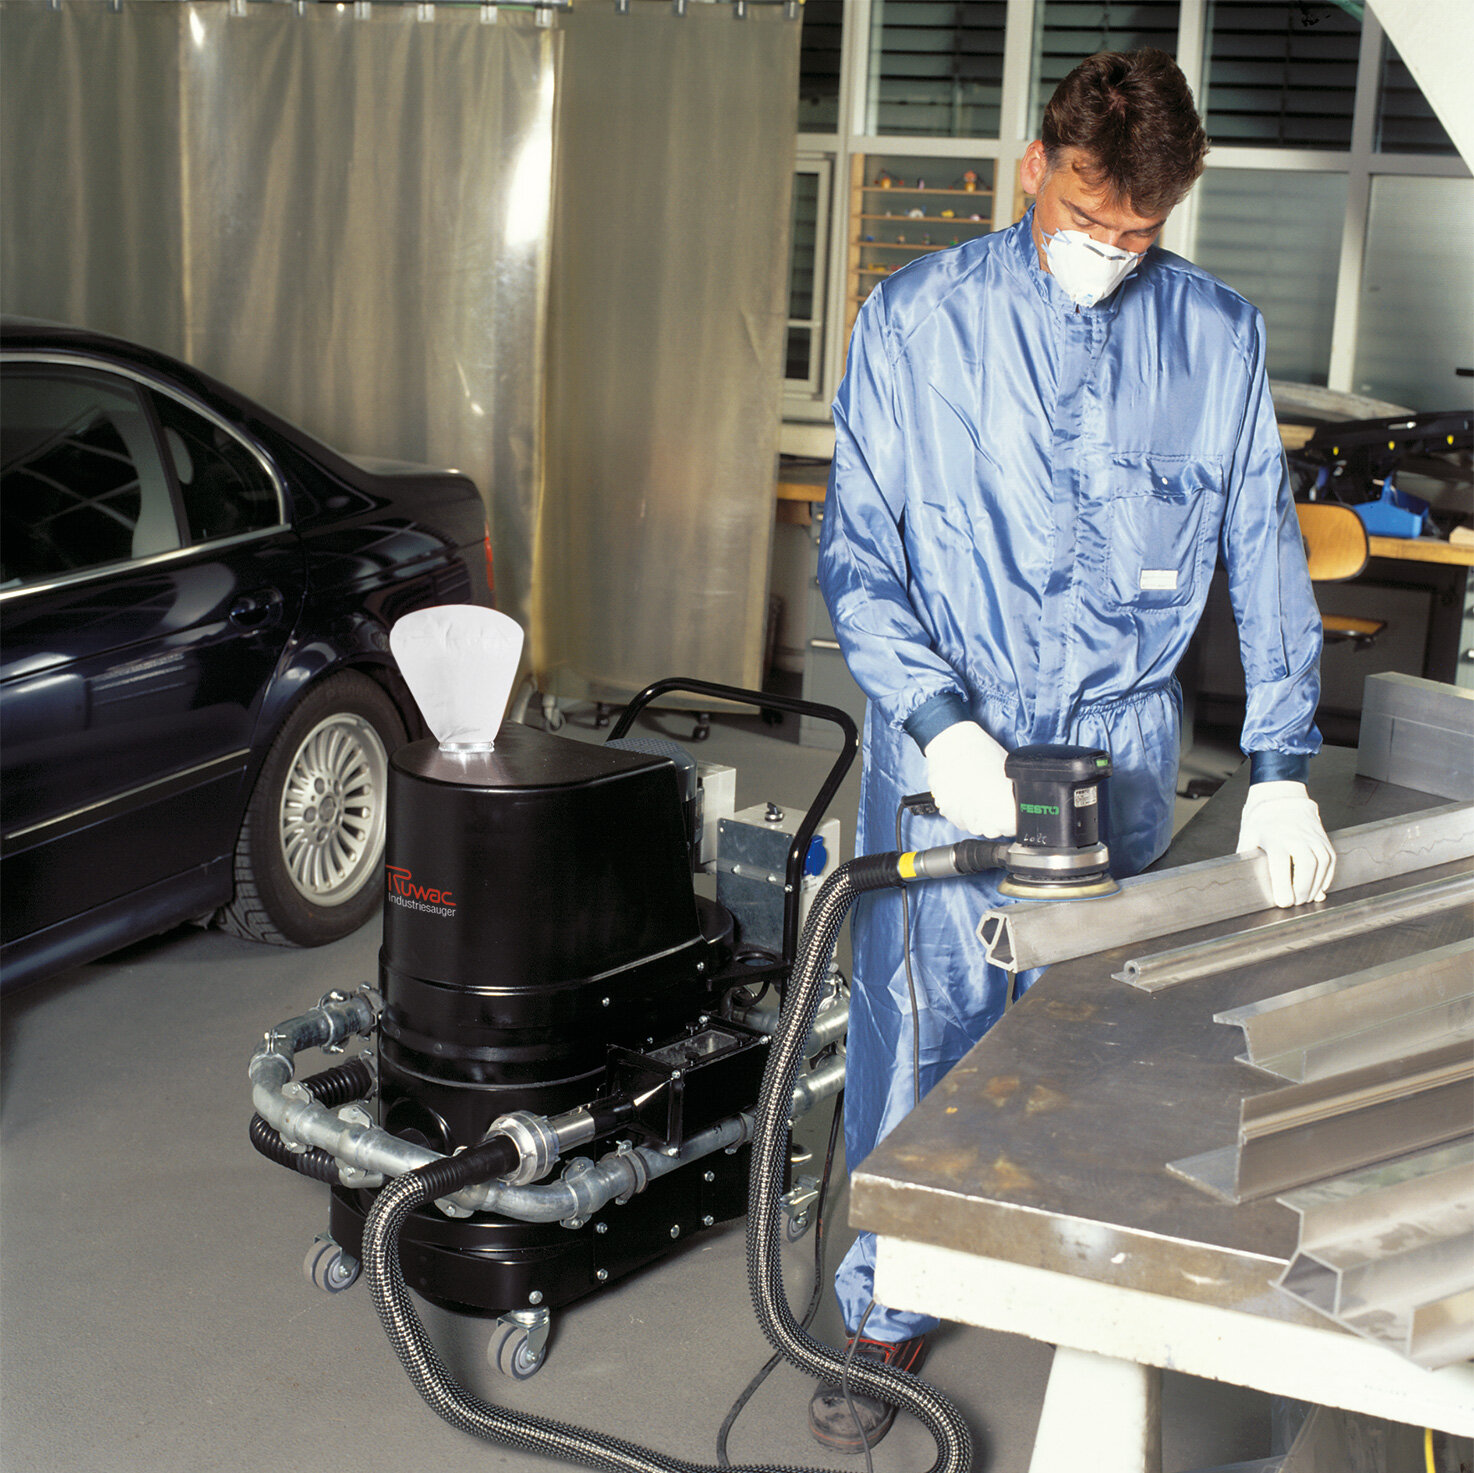 Aspiratorul industrial Ruwac R01 R022 cu capcană pentru scântei din zona Praf Ex aspiră pulbere inflamabilă de aluminiu la BMW München.